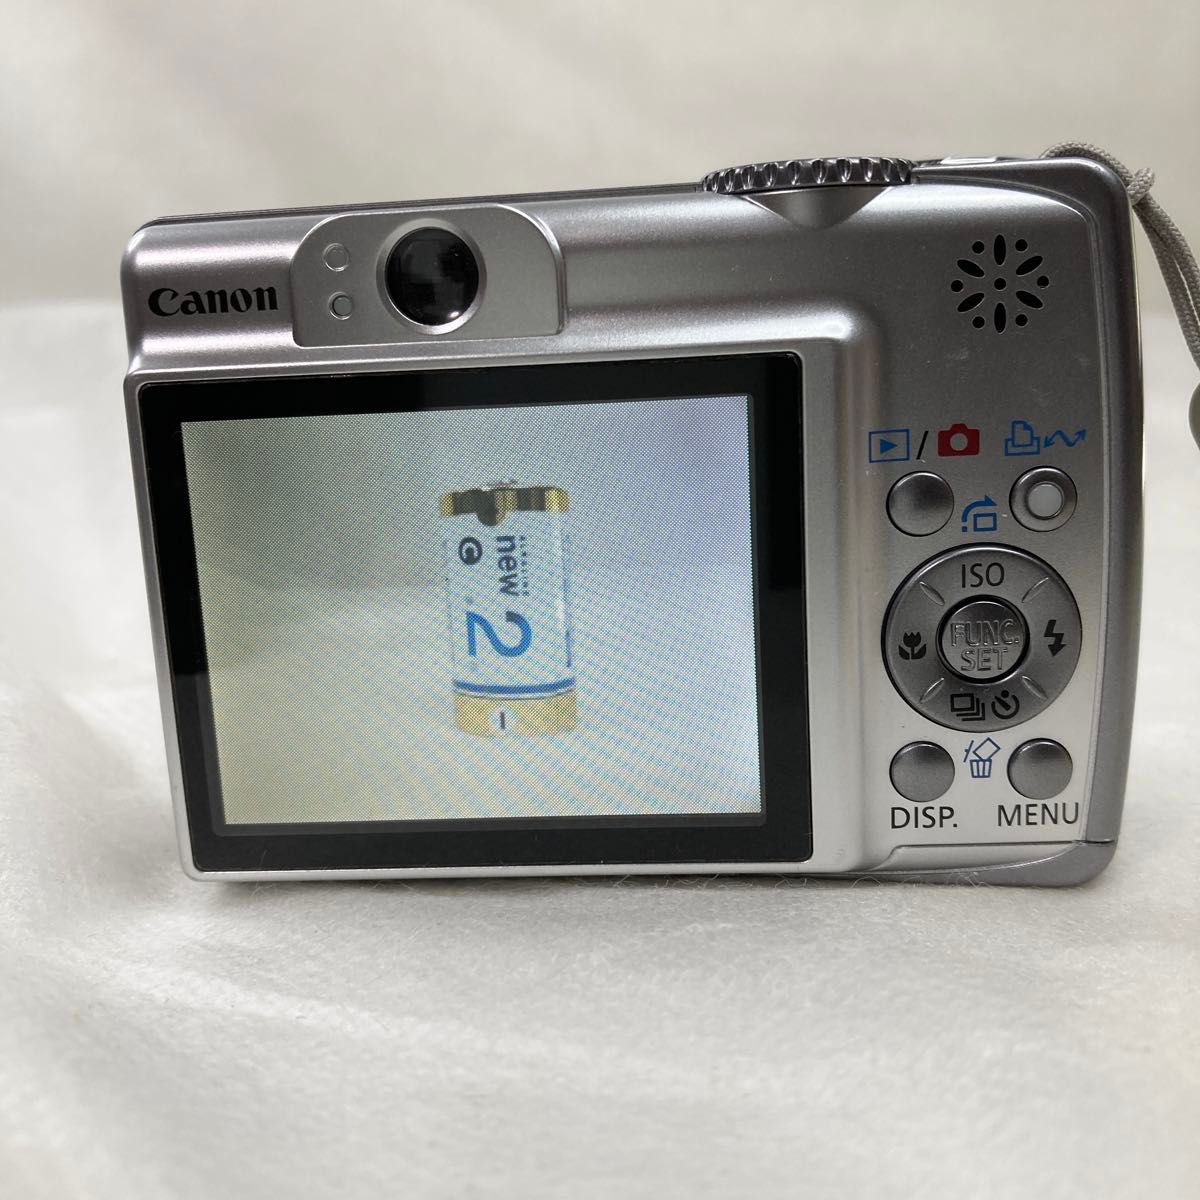 Canon キャノン コンパクトデジタルカメラ PowerShot A560 乾電池式